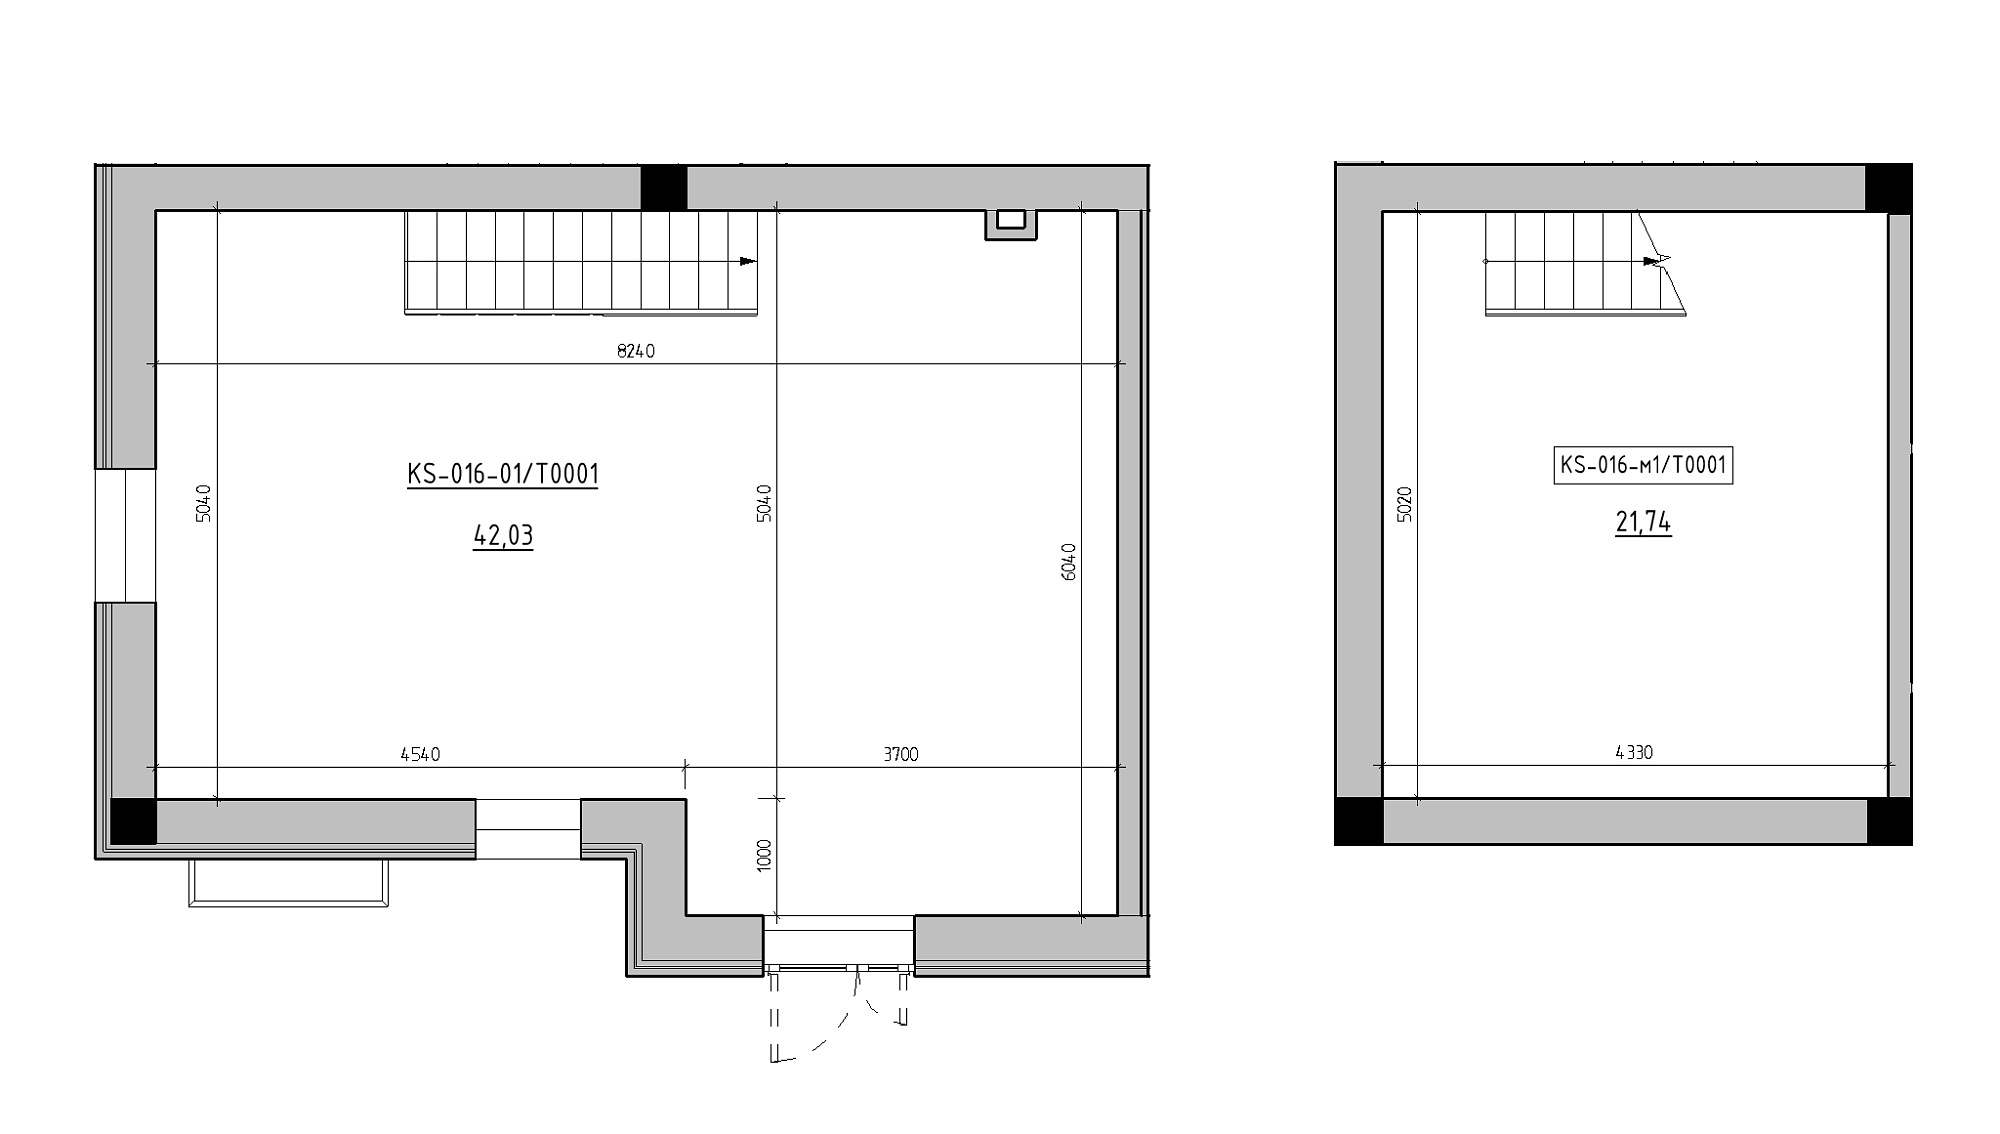 Planning Commercial premises area 63.77m2, KS-016-01/Т001.